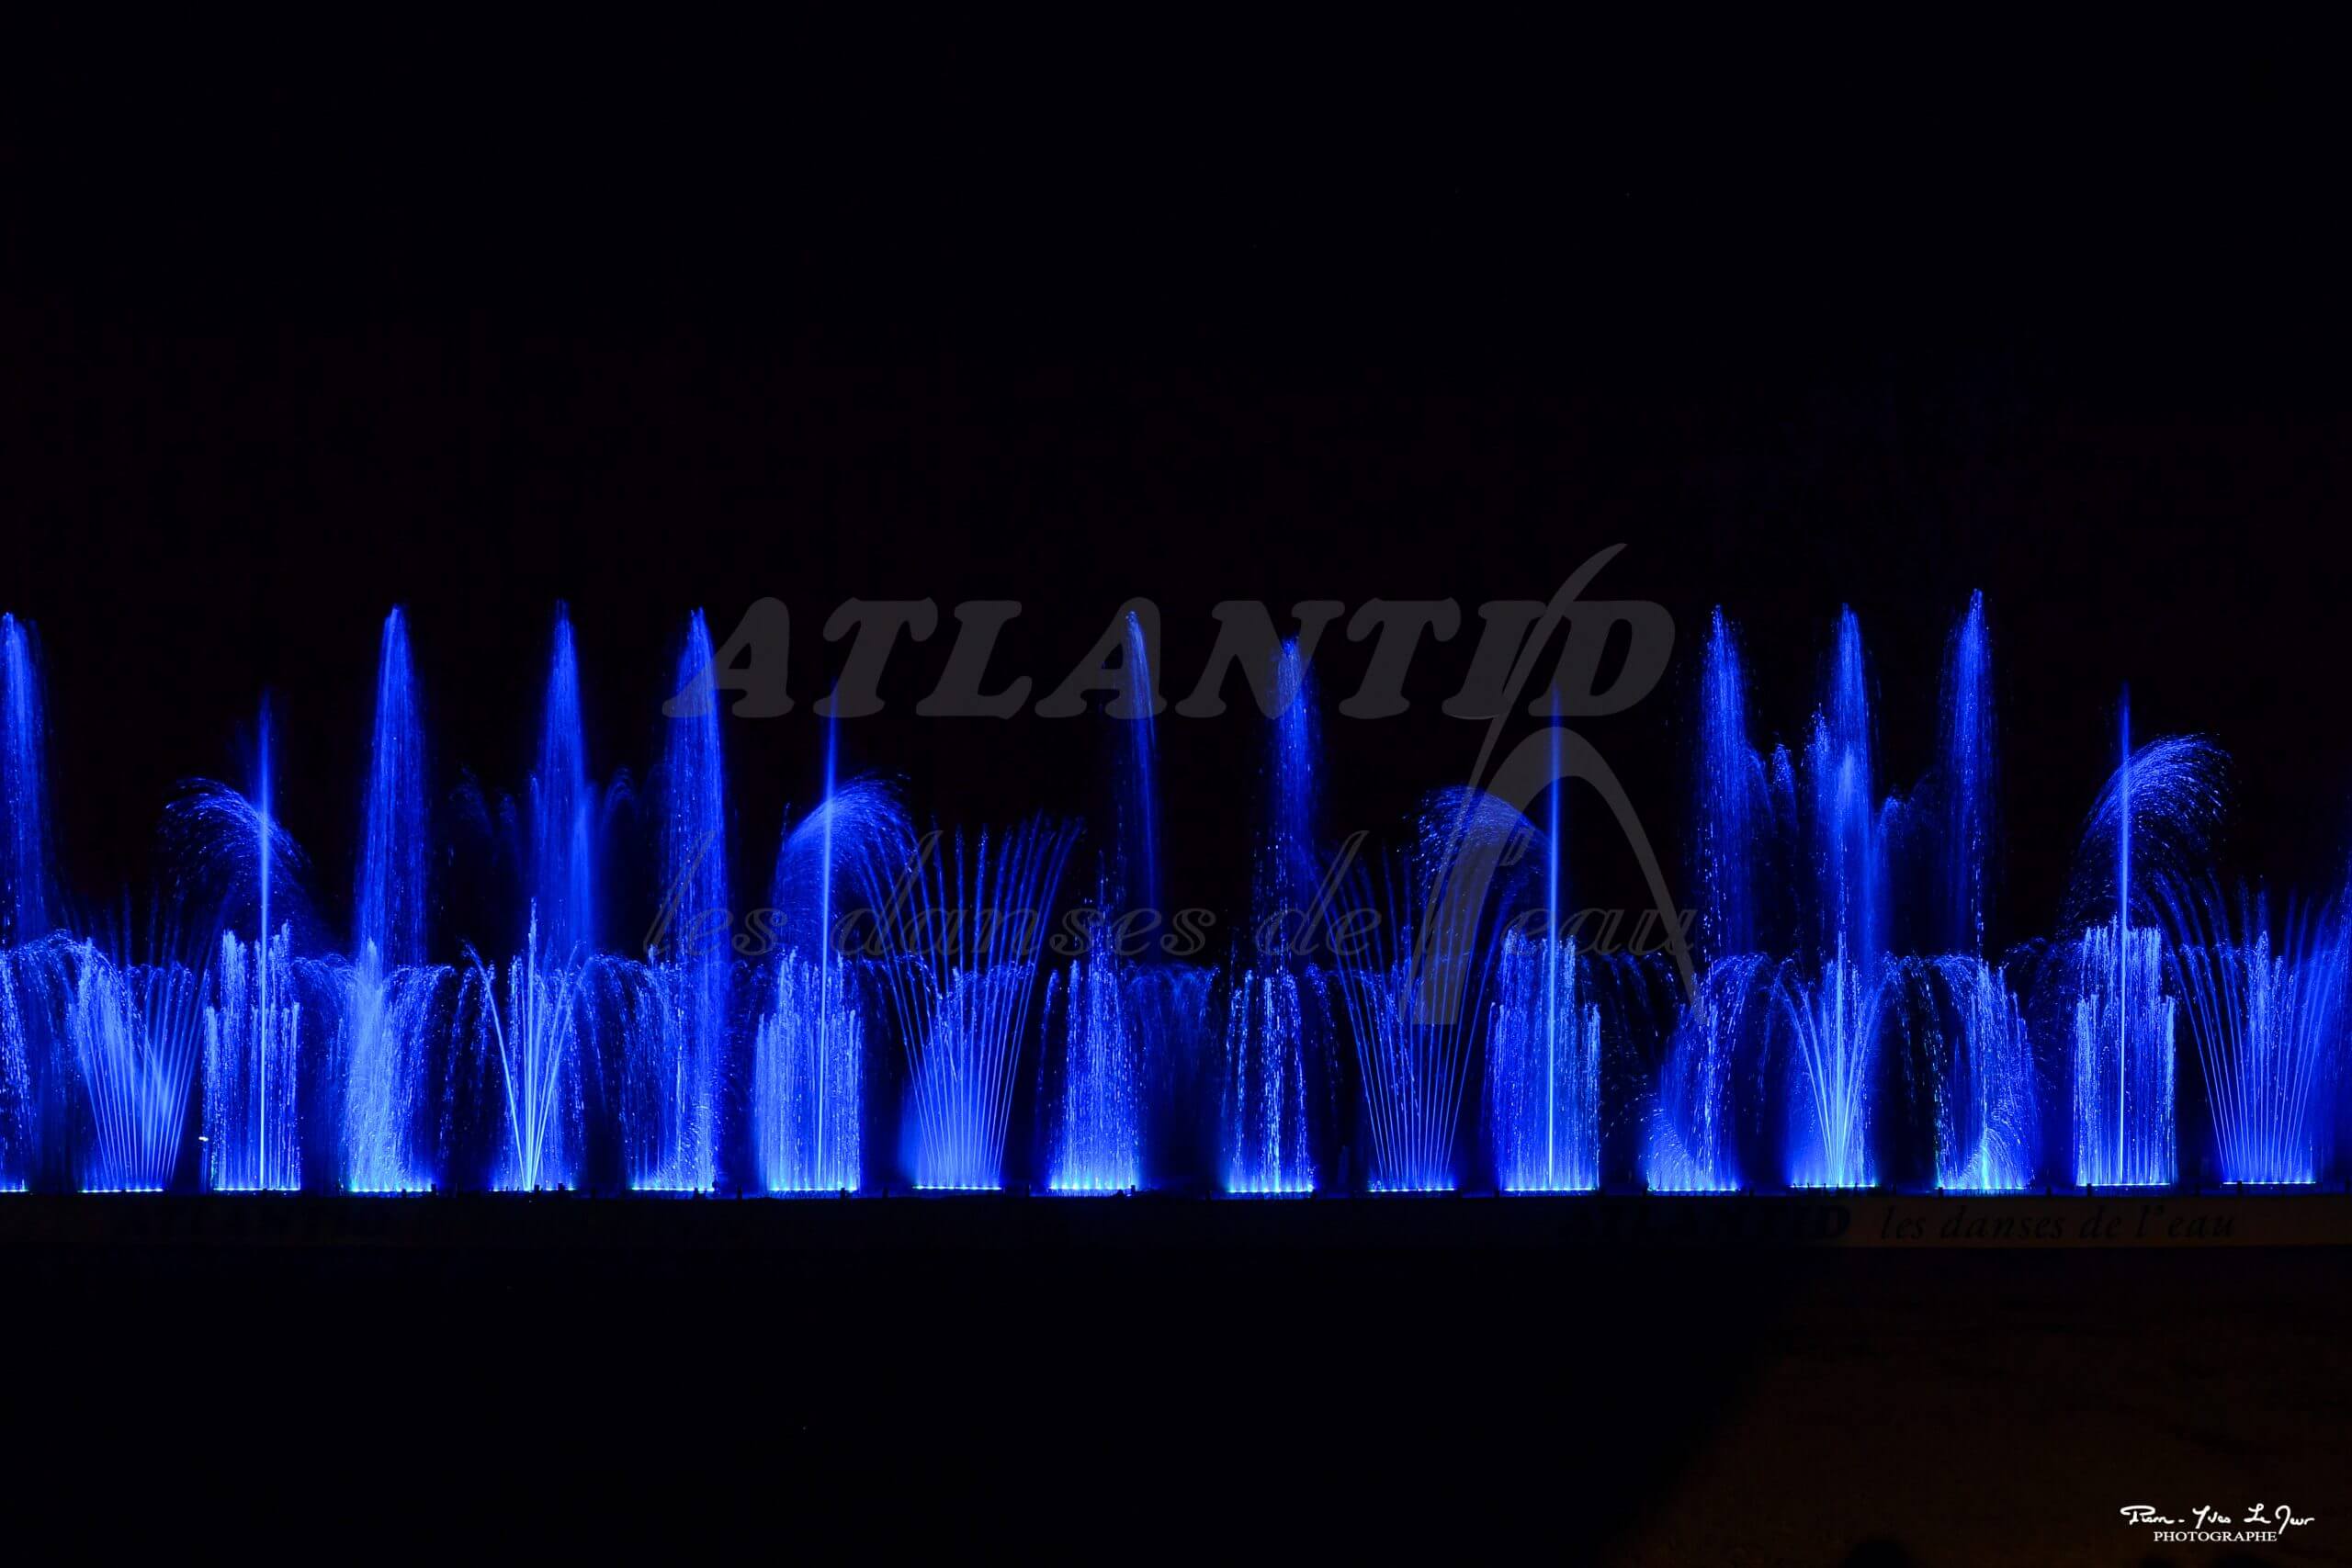 Atlantid - Espectáculo de fuentes navideñas con chorros de agua azul